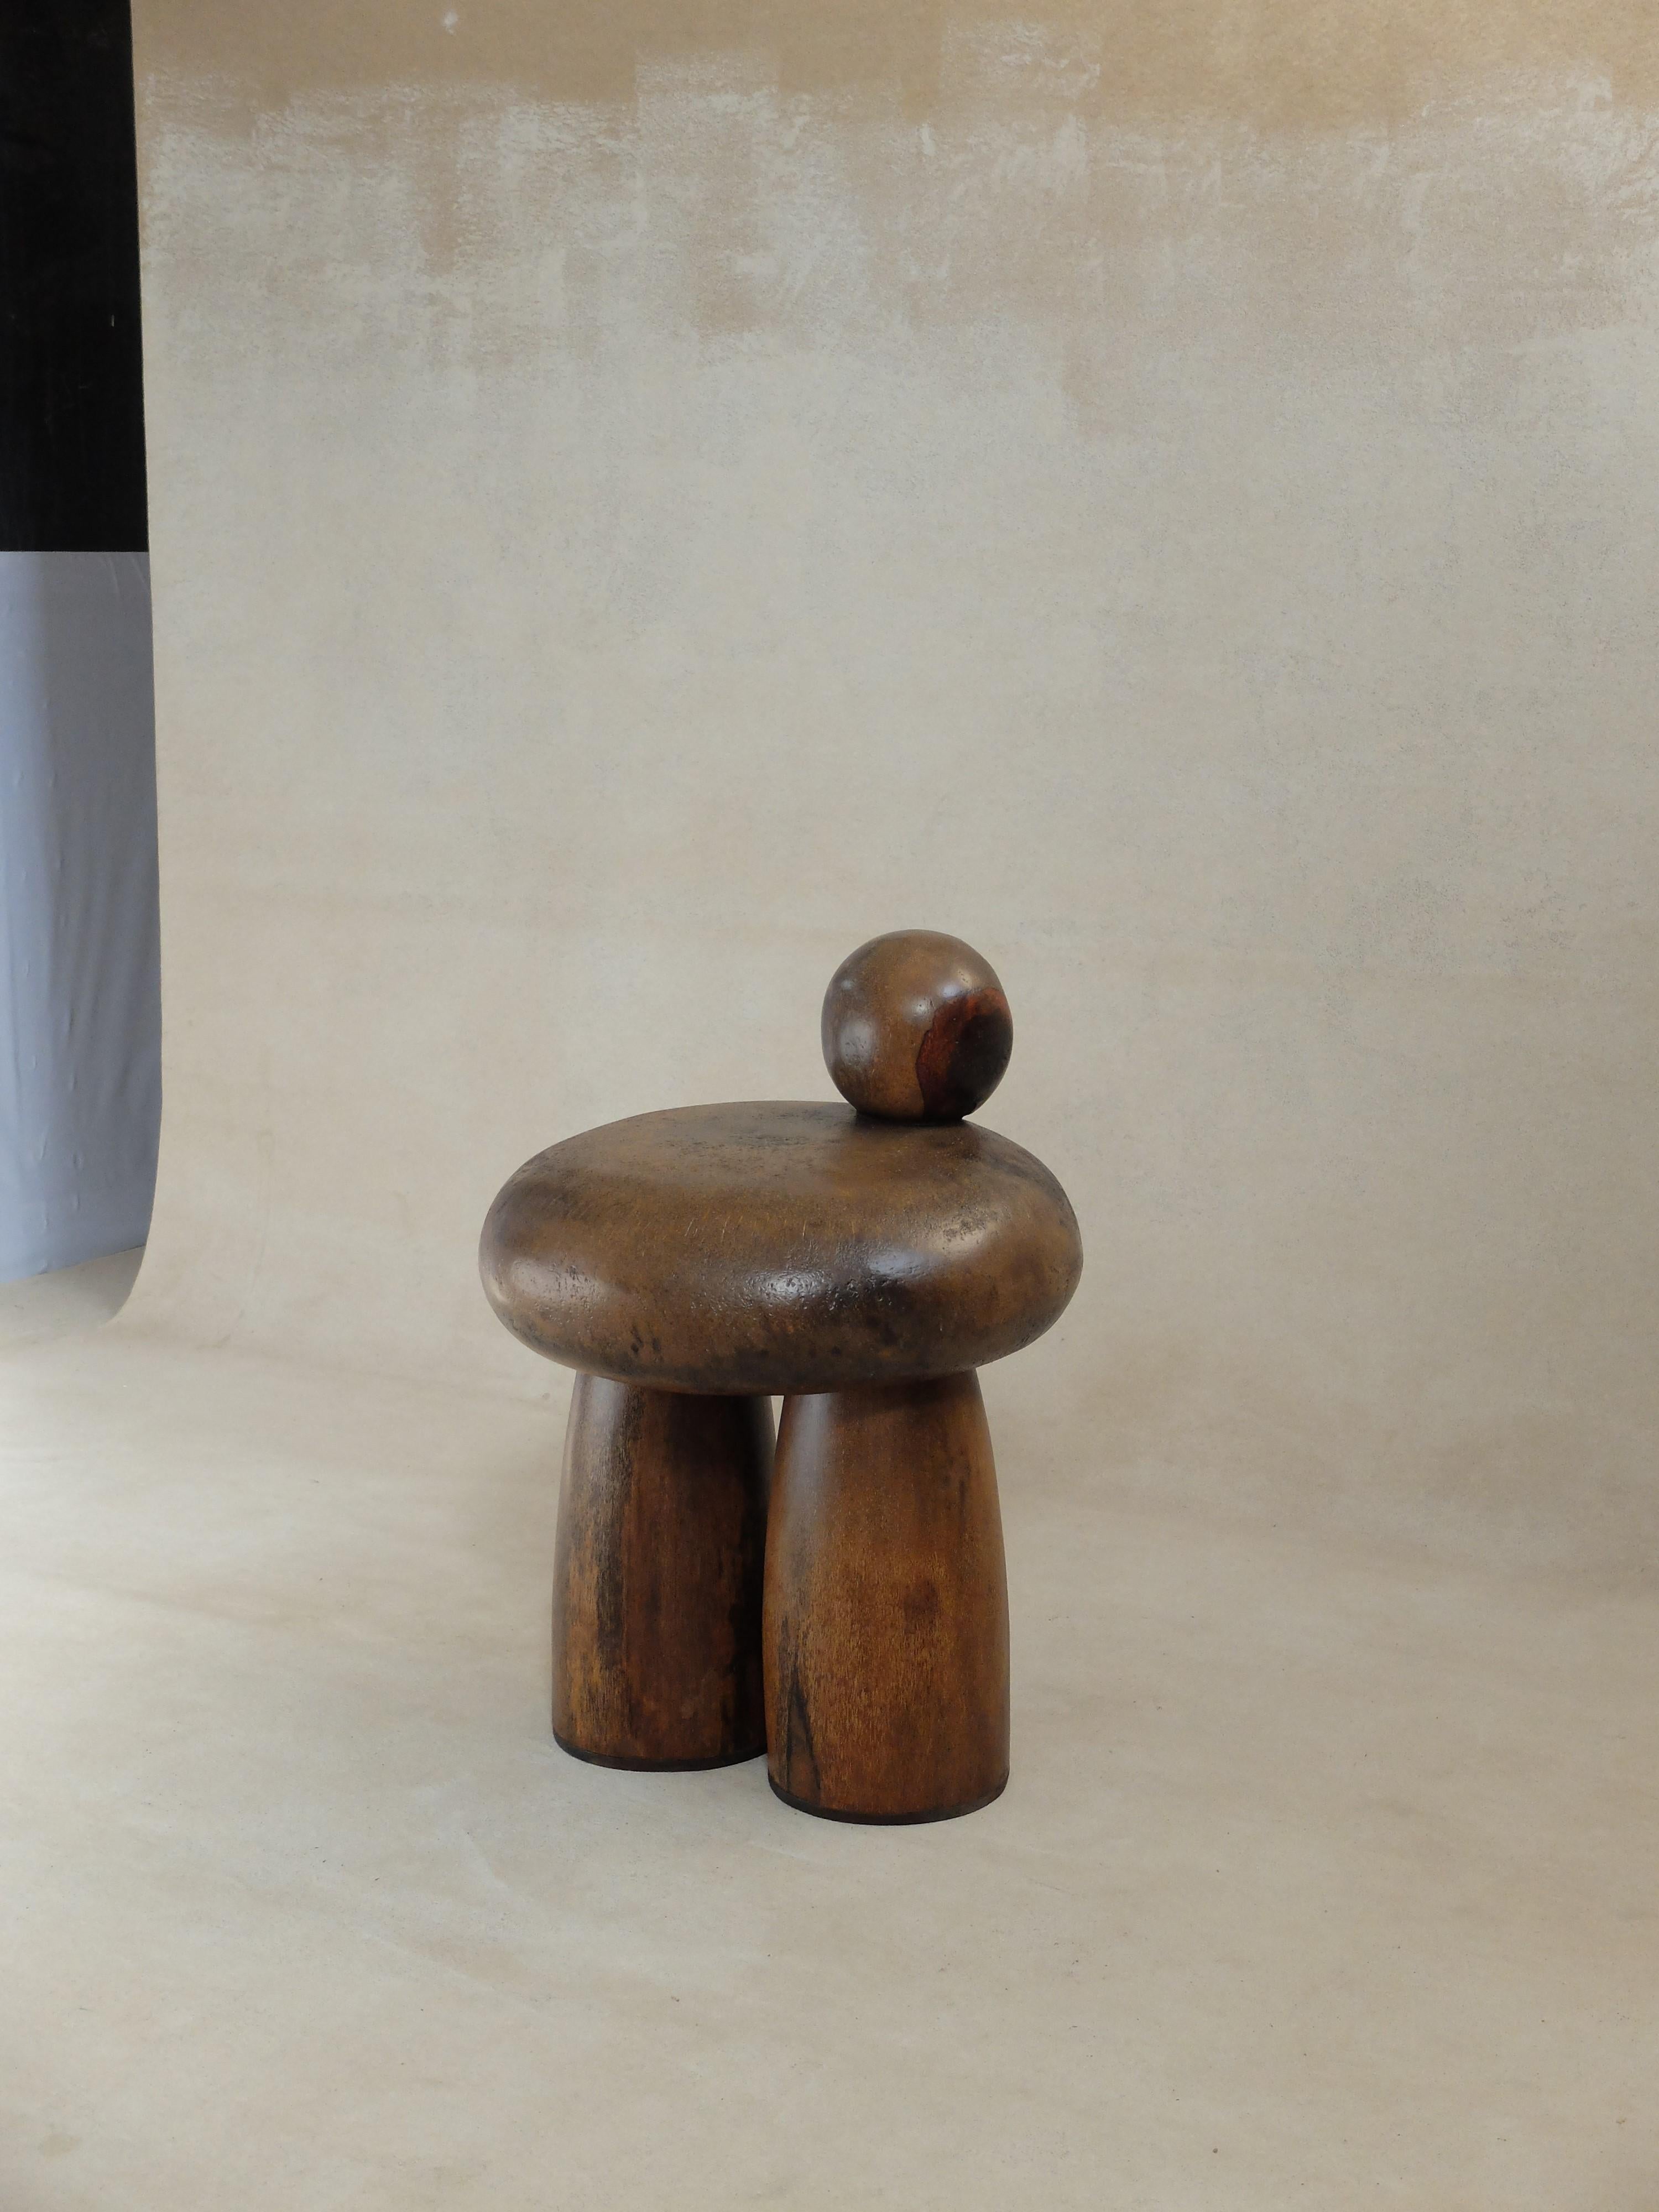 Petite assise en bois Ourse d'Altin
Conçu et développé par Yasmin Sfar et Mehdi Kebaier.
Dimensions : D 50 x H 68 cm
MATERIAL : Bois de palmier.

Siège en bois de palmier sculpté à la main.

Orbite
Un voyage vers un nouveau monde de rêve que nous